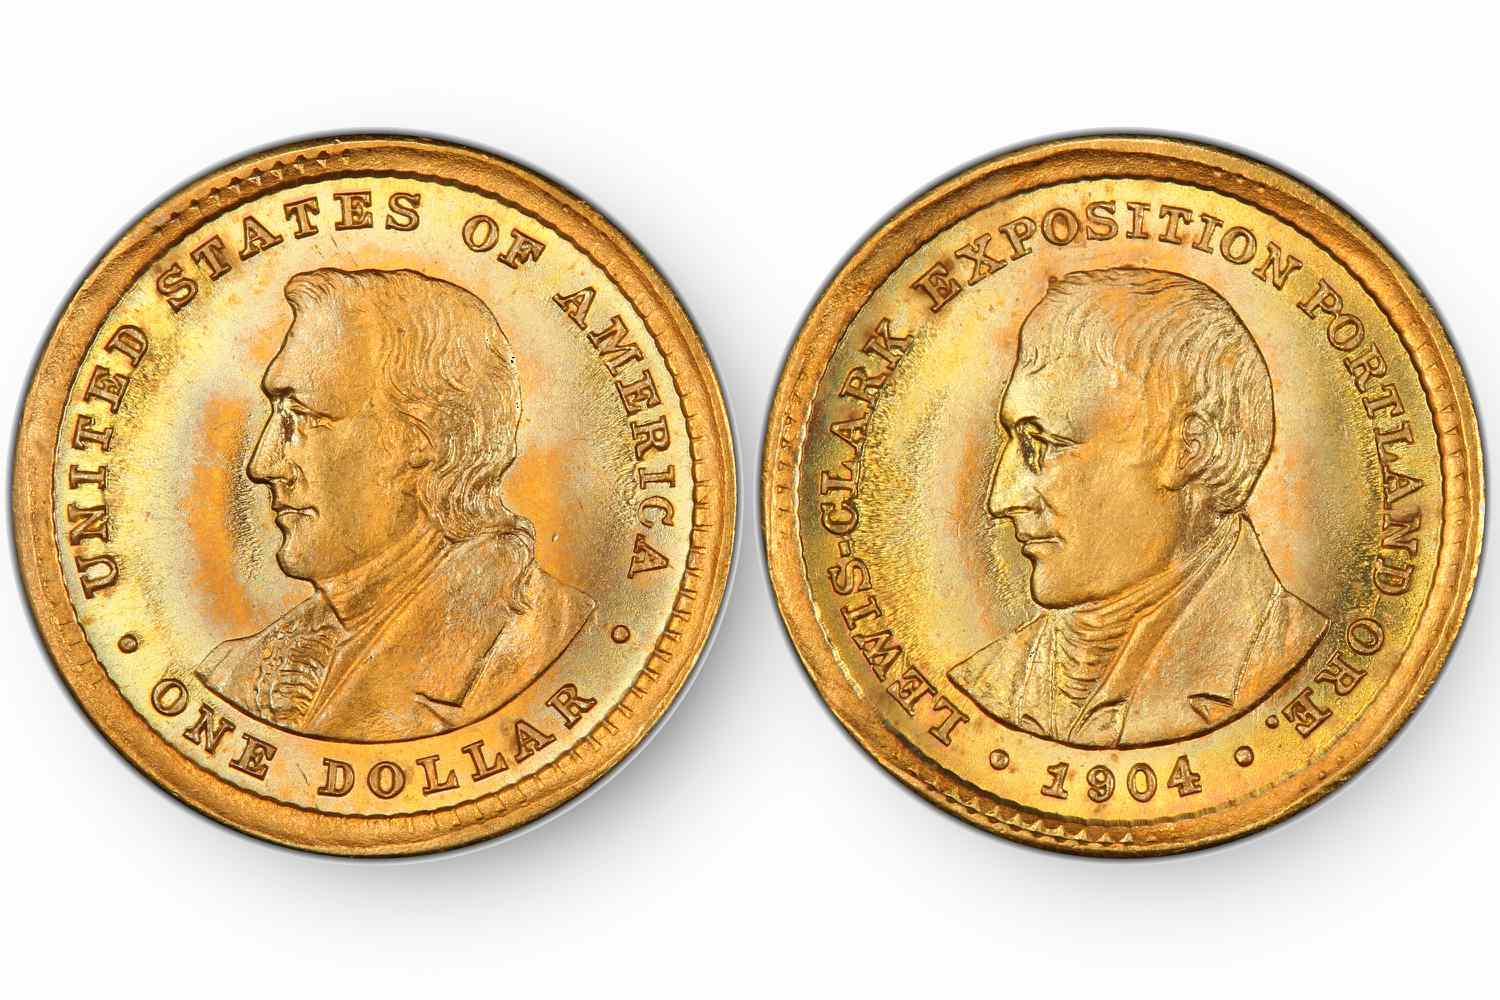 1904年路易斯和克拉克博览会纪念金币一美元。